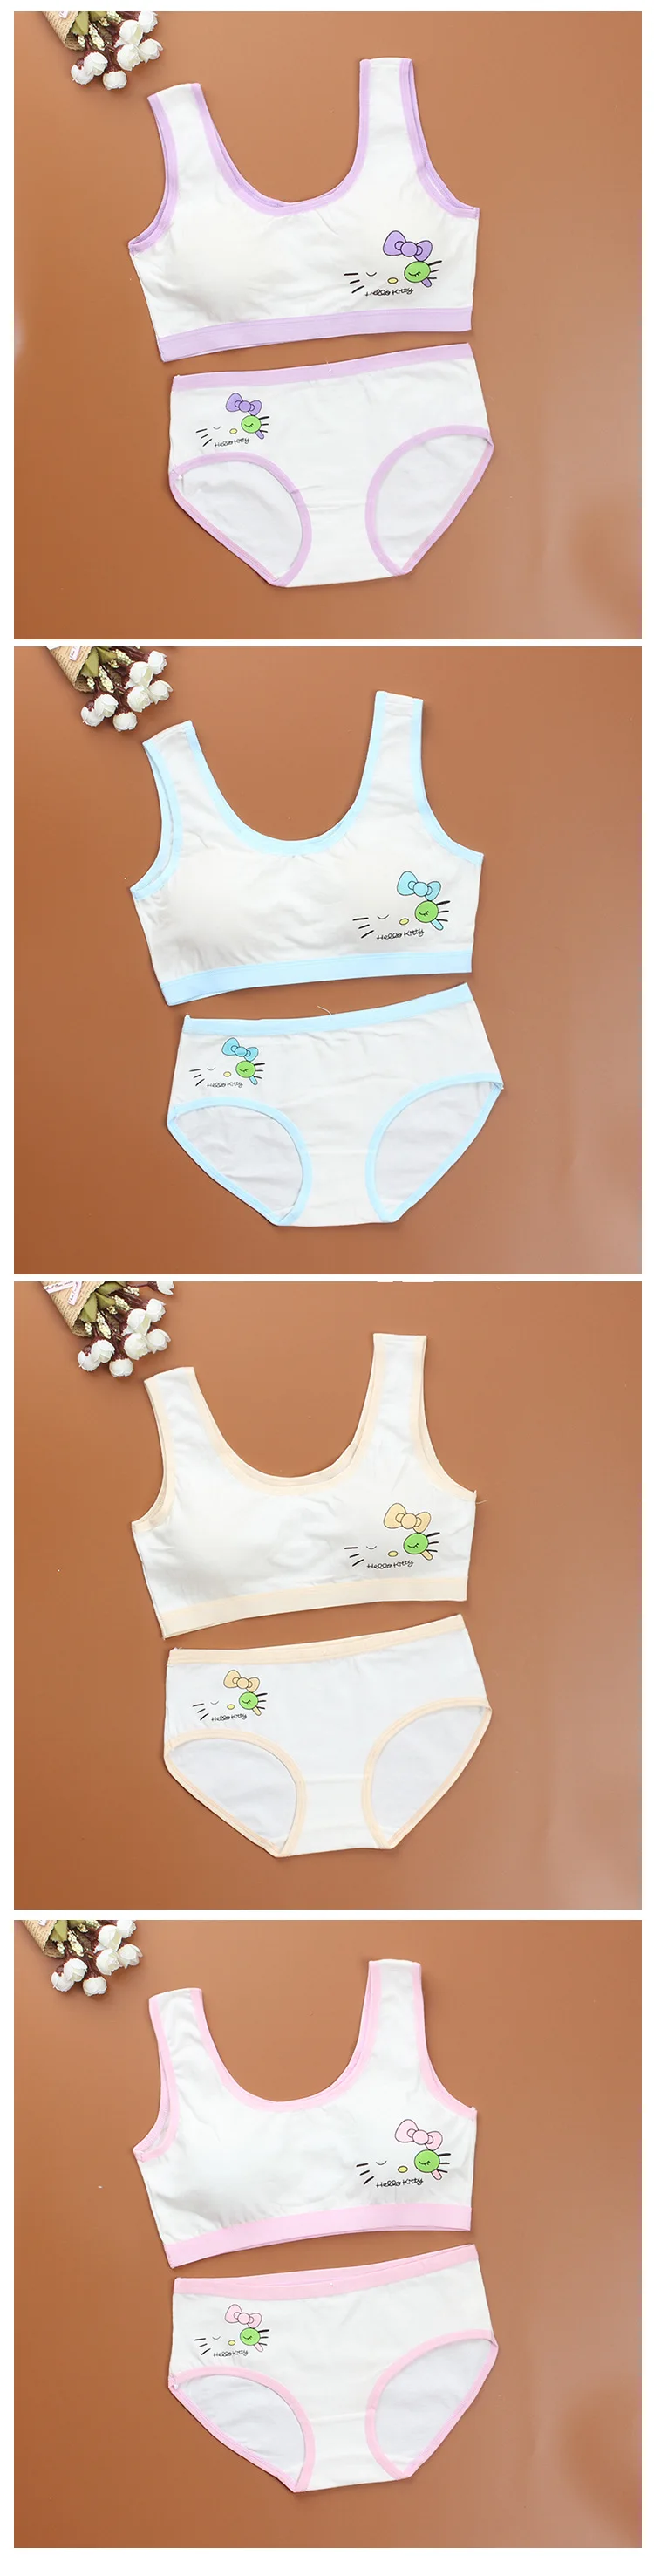 New Lovely Bra Girls Underwear Cotton Bra Vest+Briefs Sets Children Underclothes Sport Undies Bustier Crop Top wholesale